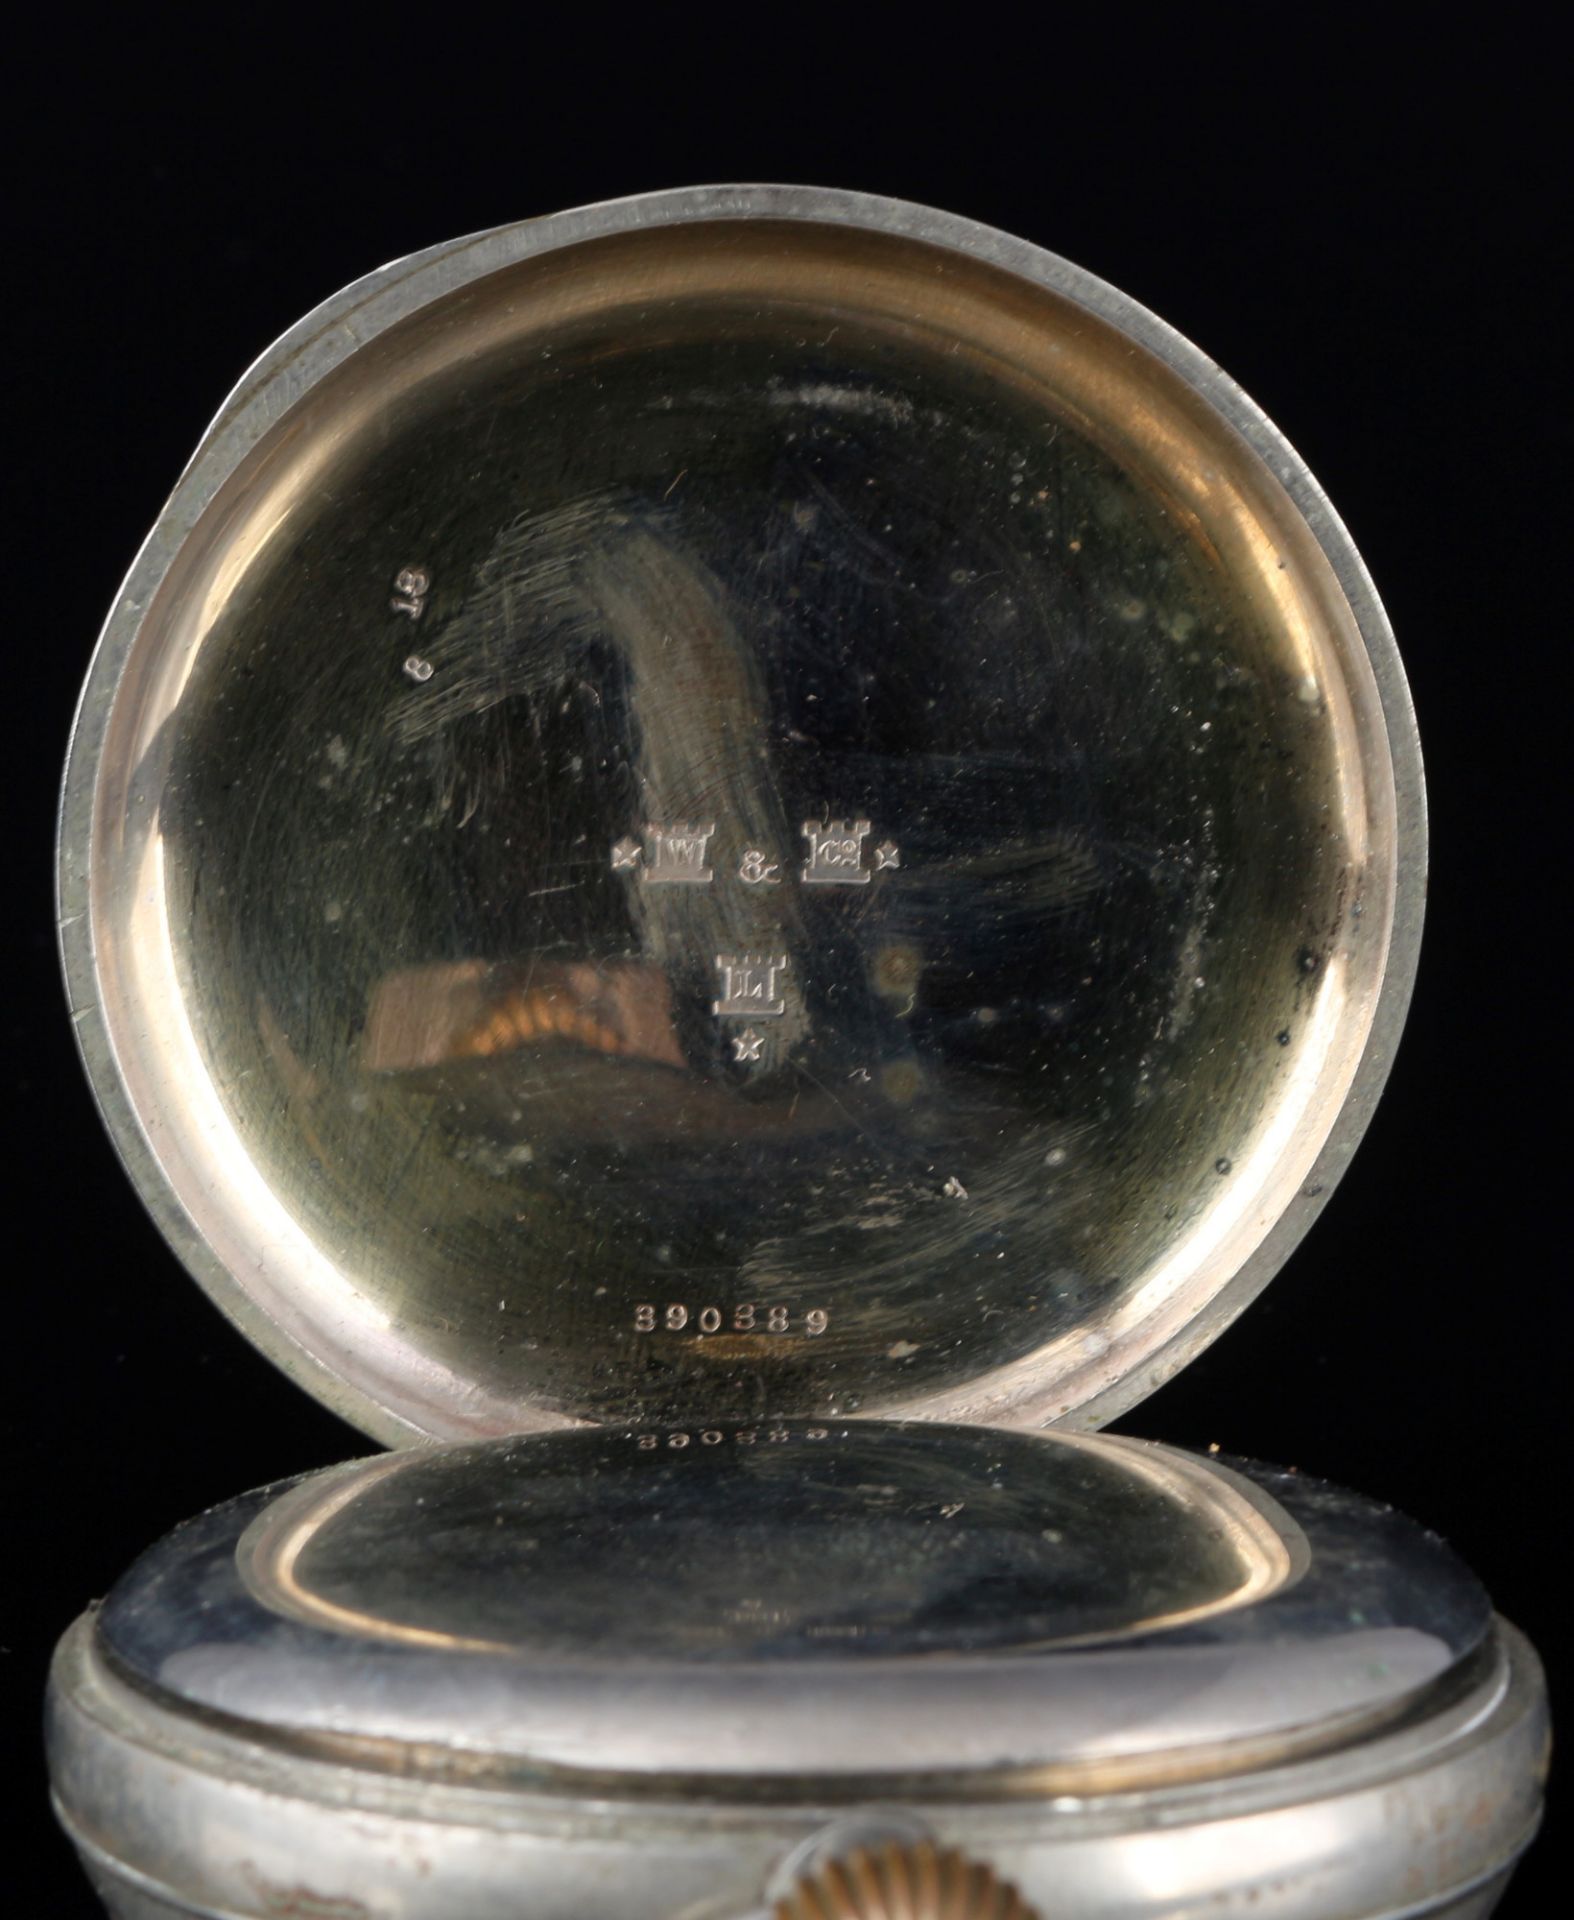 Brevet Taschenuhr als Reiseuhr in 925 Sterling Silbergehäuse um 1900, - Bild 5 aus 8